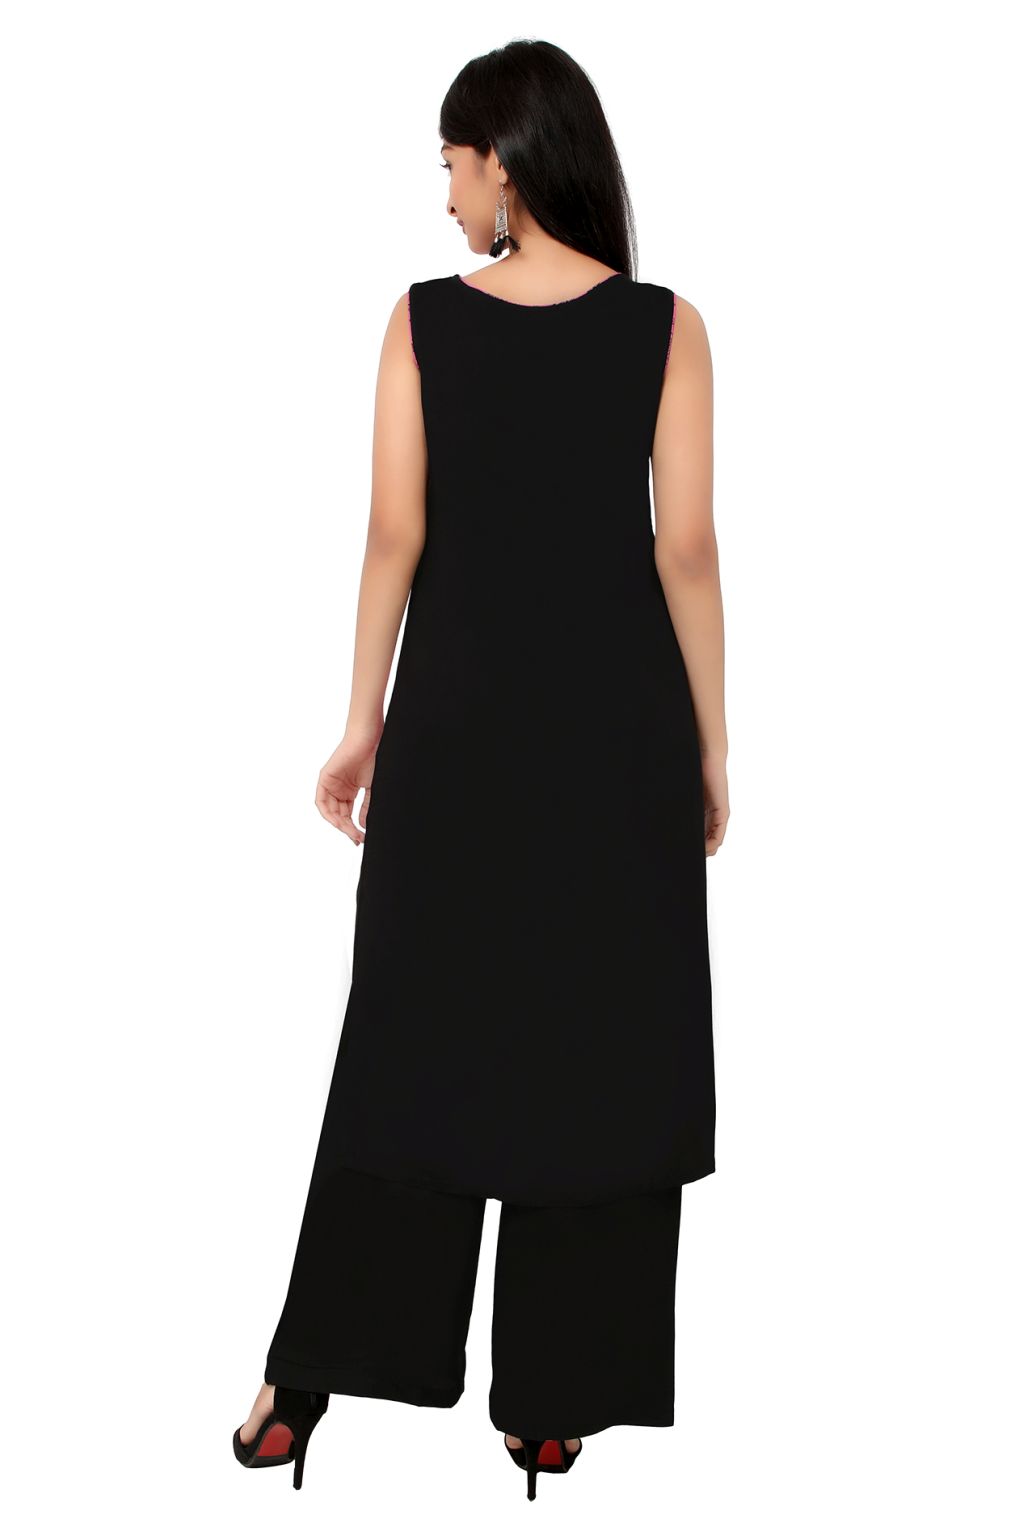 Coofandy Women Maxi Black Dress - Buy Coofandy Women Maxi Black Dress  Online at Best Prices in India | Flipkart.com